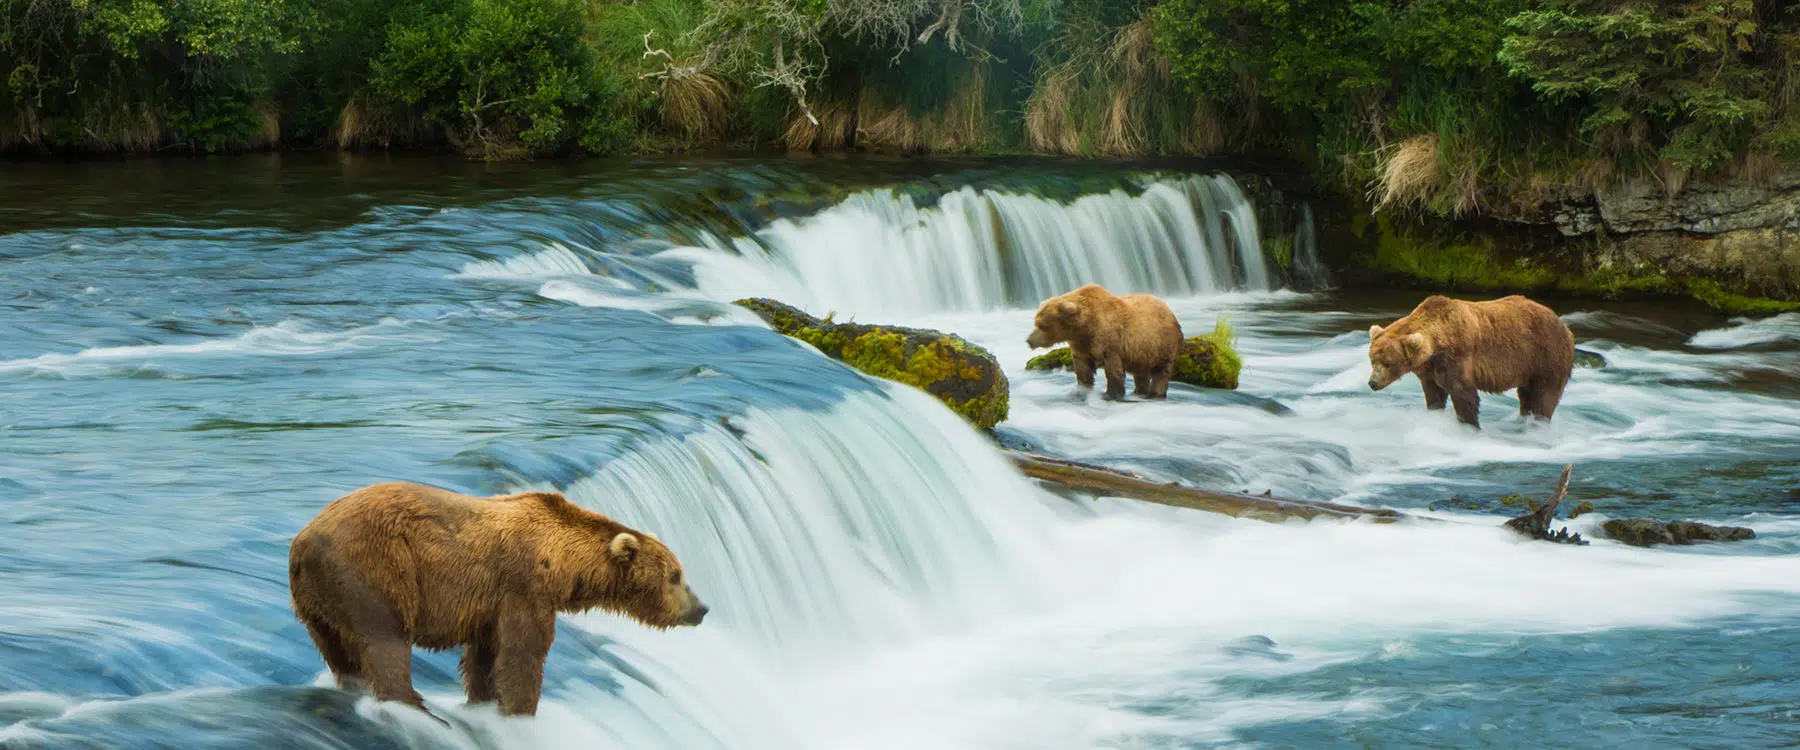 bears at falls